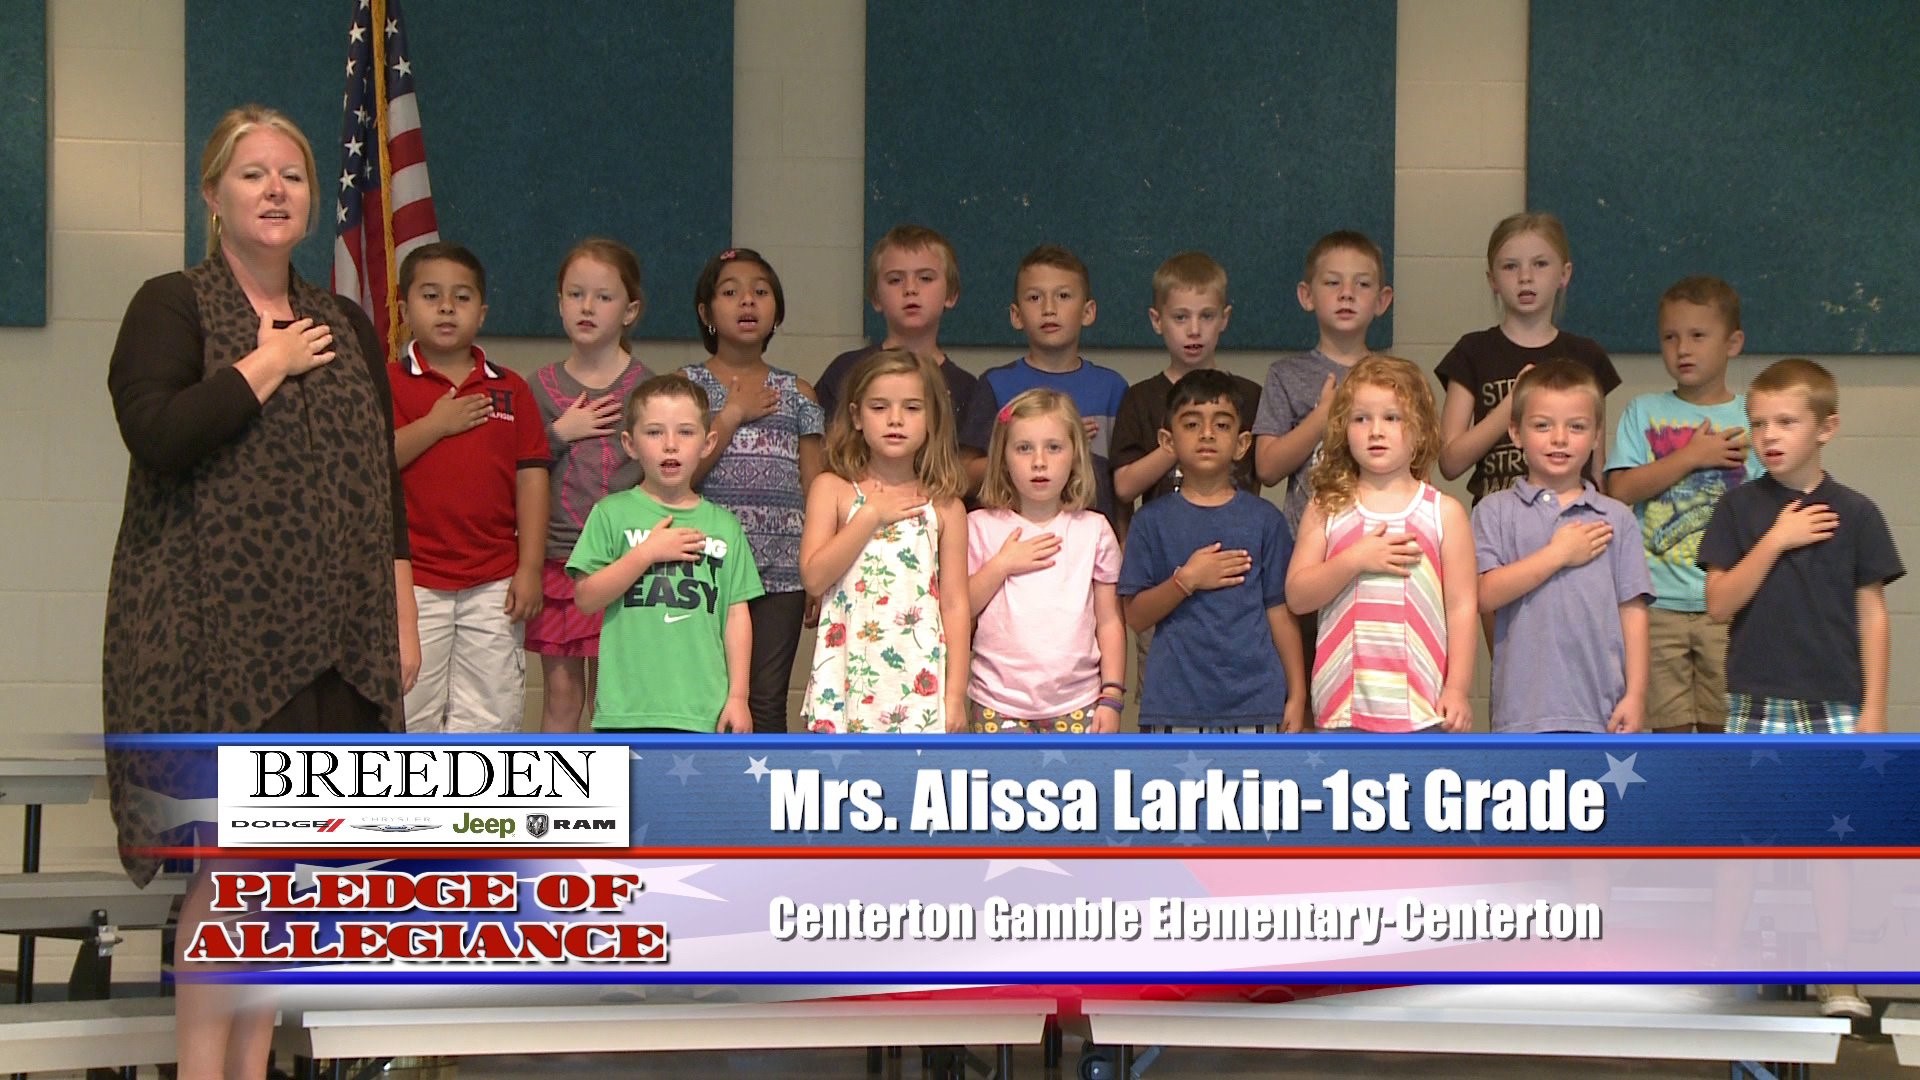 Mrs. Alissa Larkin  1st Grade  Centerton Gamble Elementary - Centerton